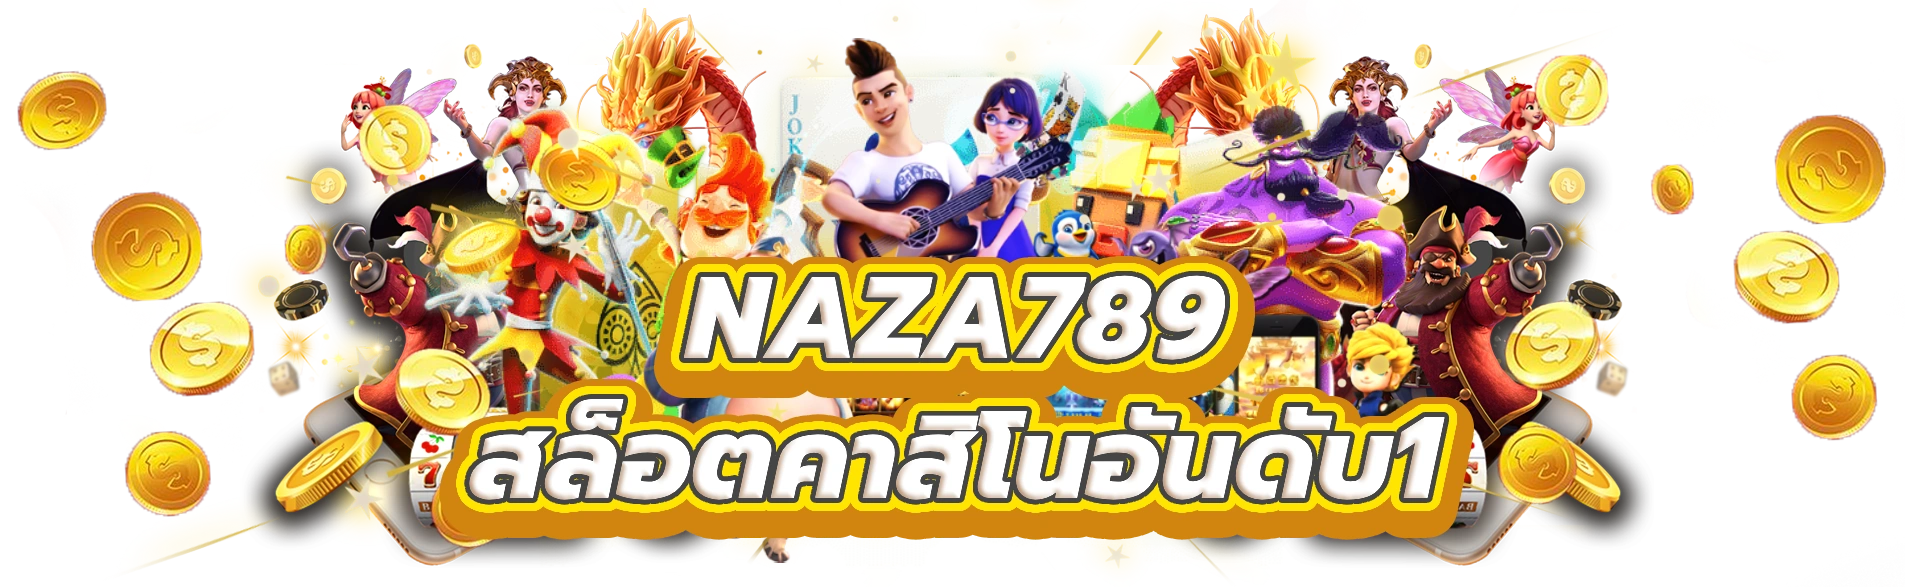 naza789 รับโชคดีกับเกมสล็อตคาสิโนอันดับ1ของไทย